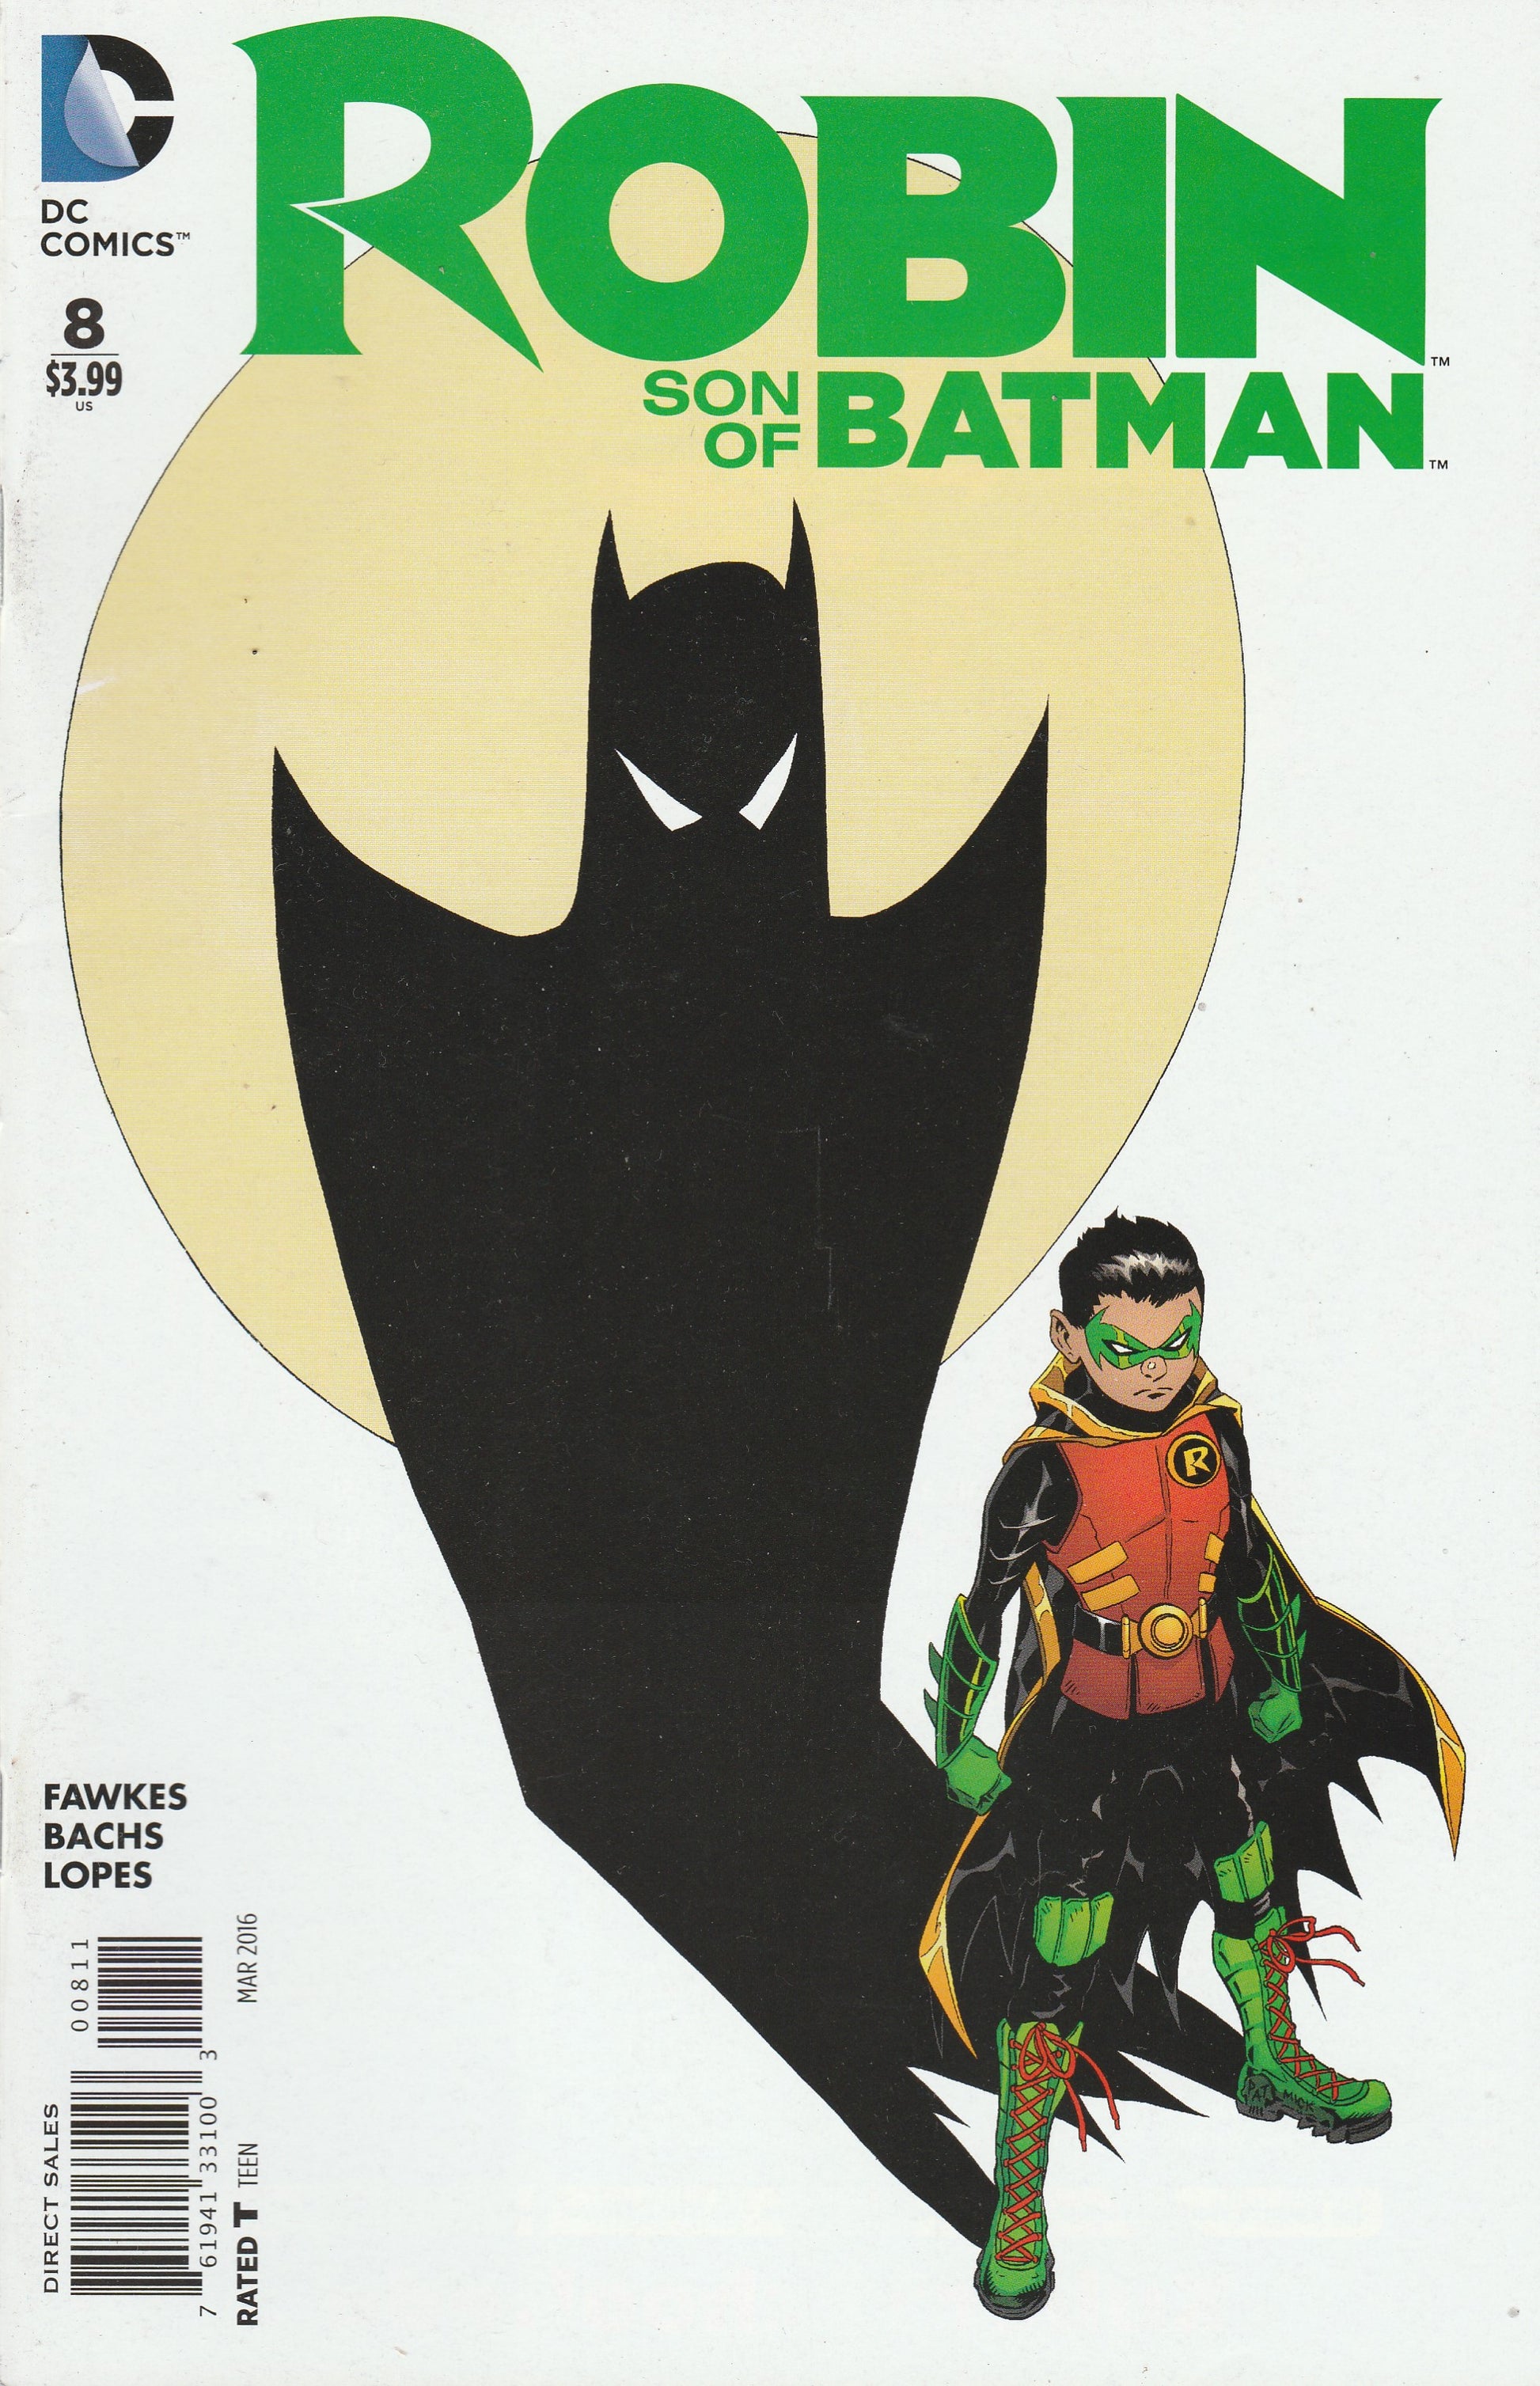 Robin: Son of Batman # 8 DC Comics – 